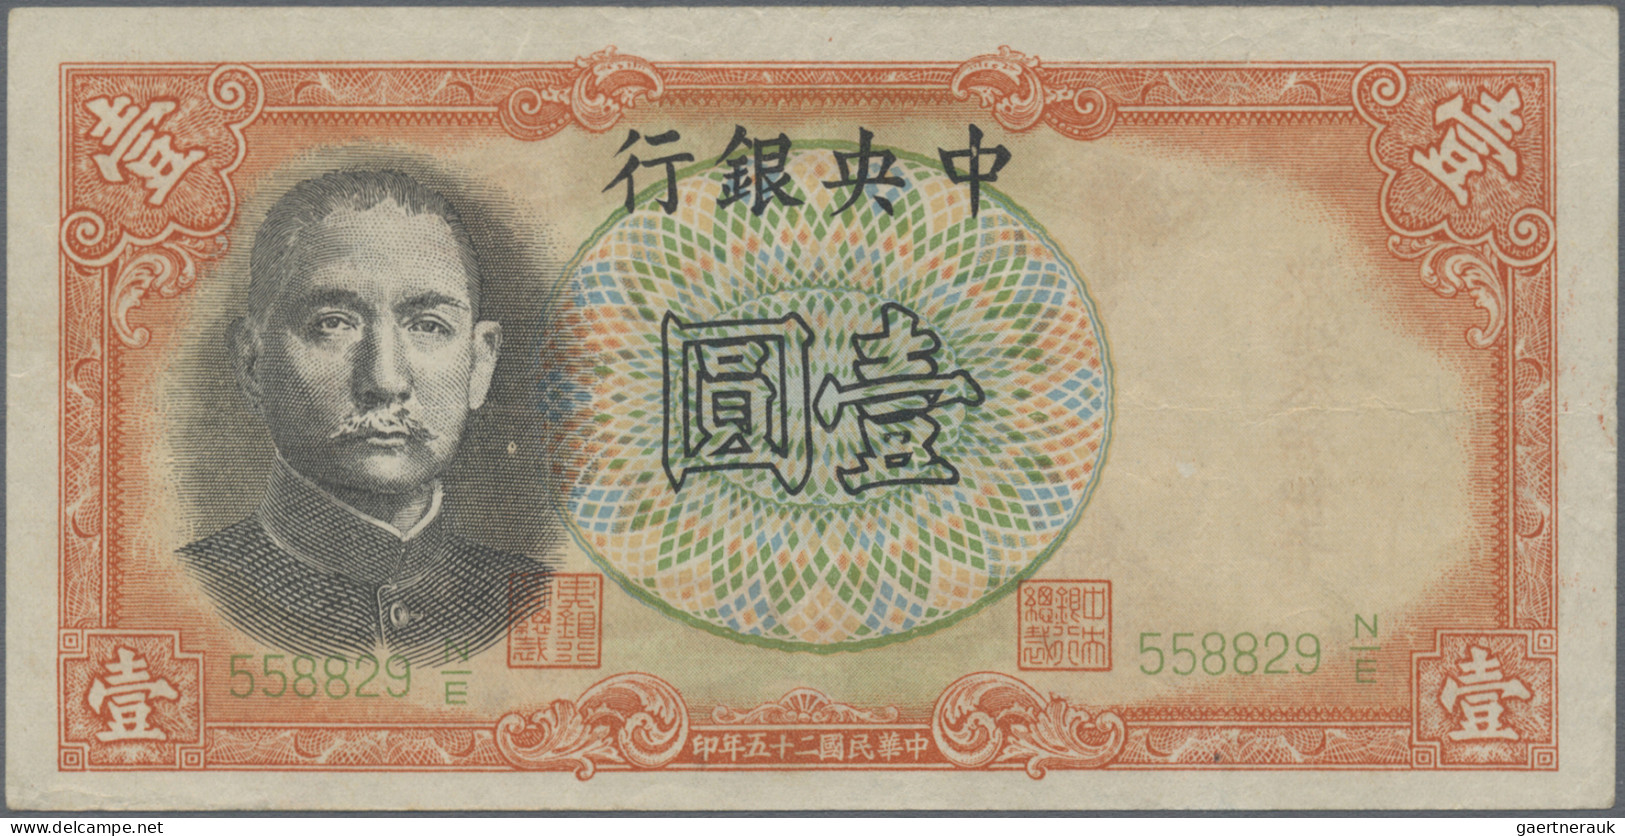 China: Central Bank Of China – Pass For Nanking Military Government, 1 Yuan 1936 - Cina